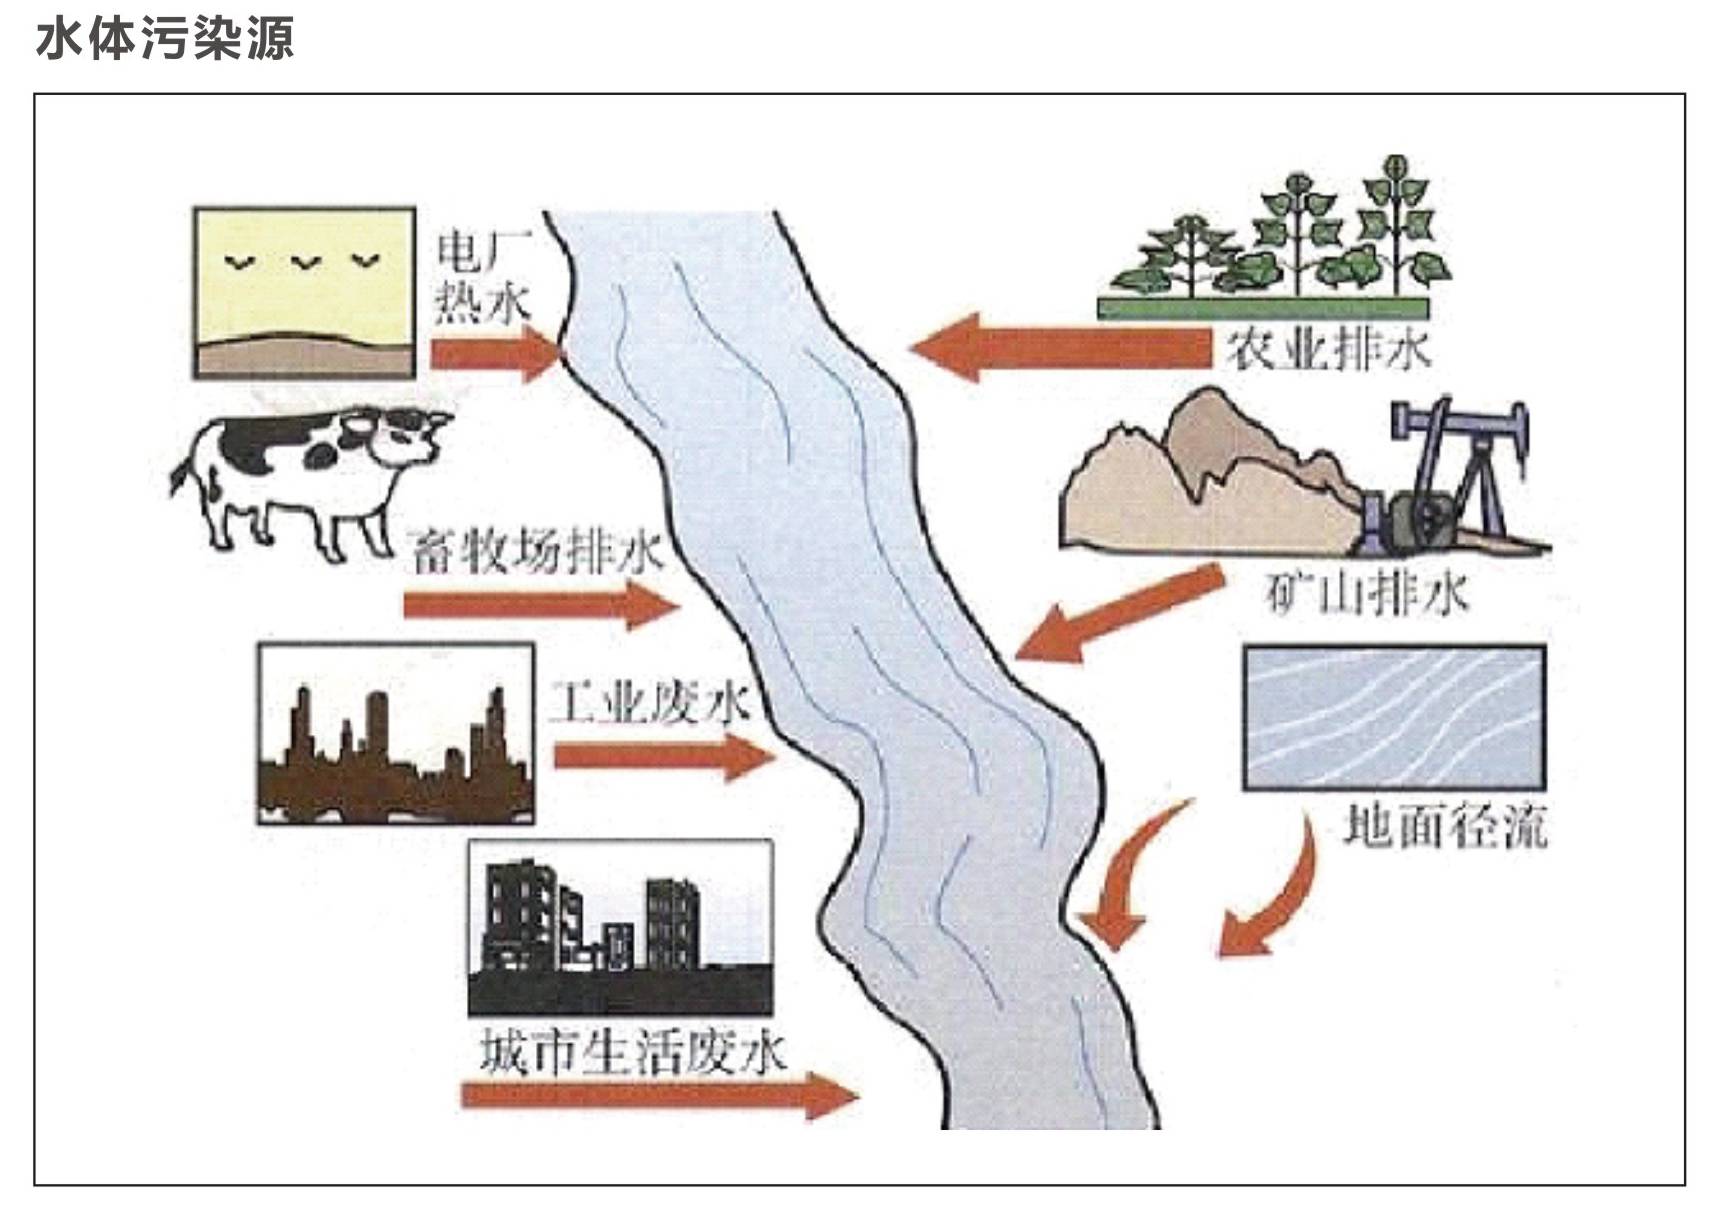 恐慌丨解读中国水质现状,水污染竟跟时间赛跑!